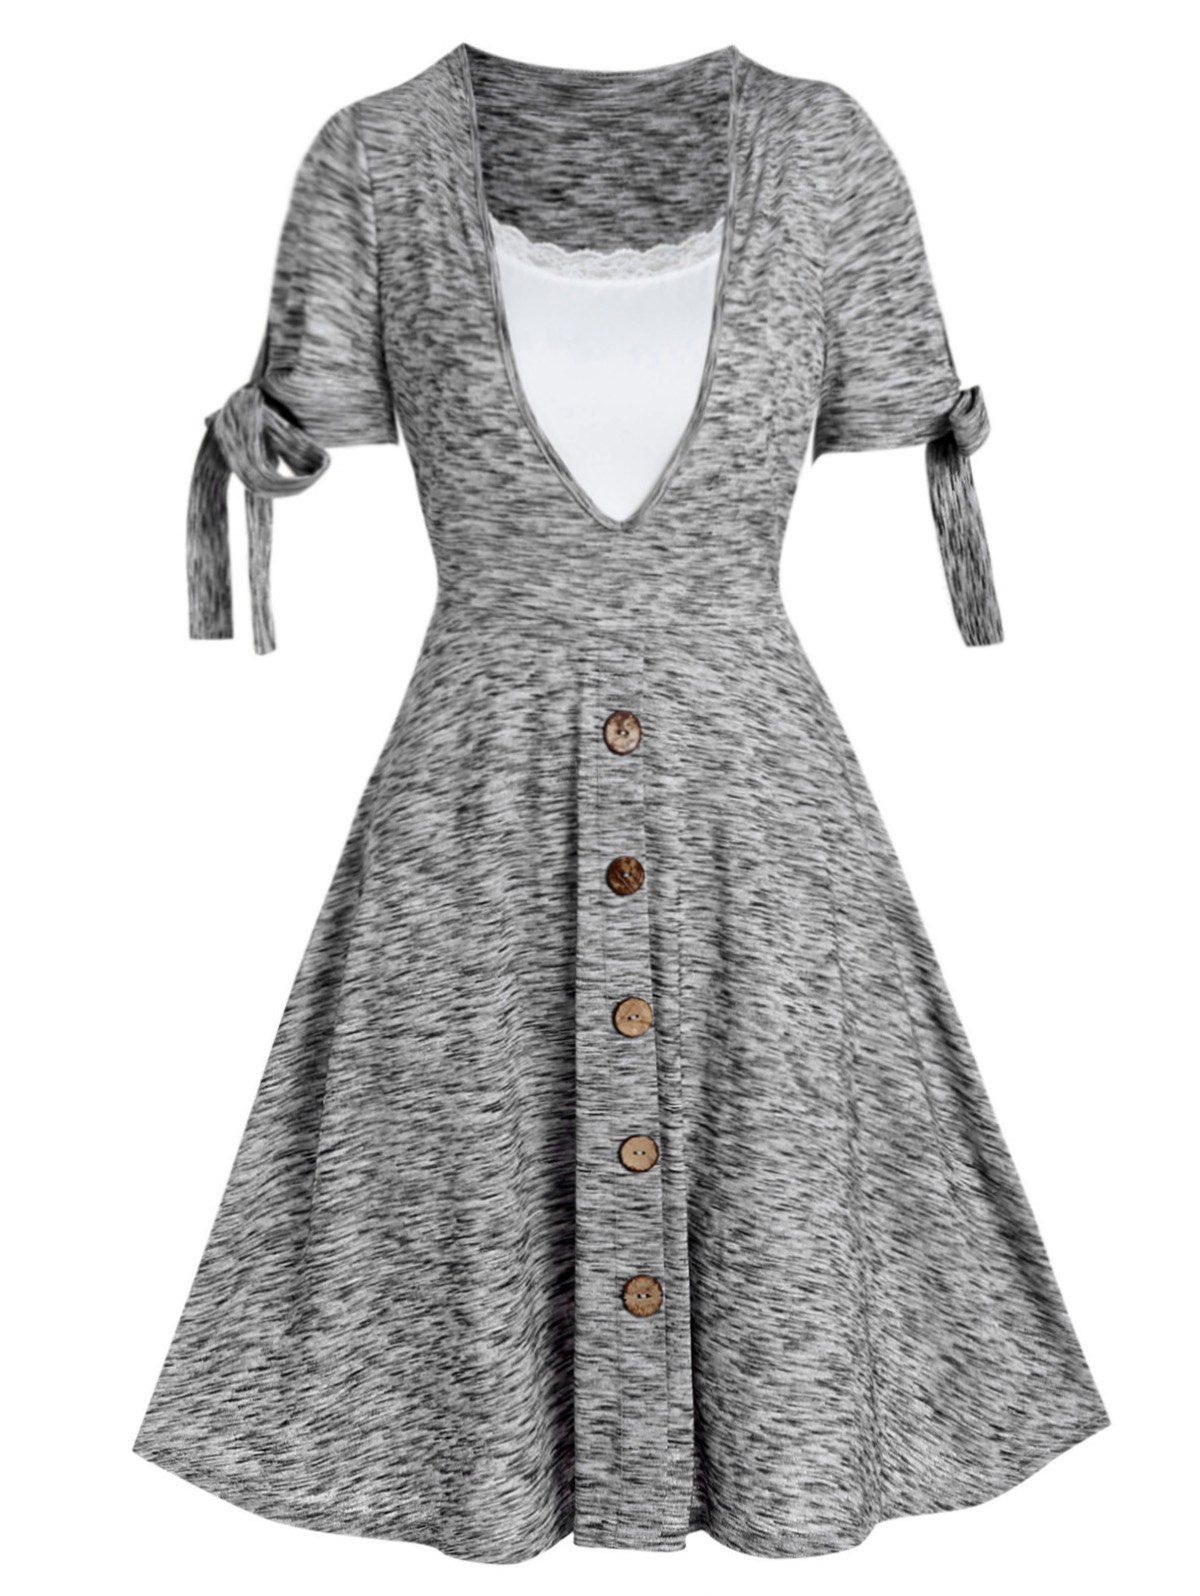 Space Dye Dress Mock Button Bowknot Lace Panel High Waist Summer A Line Mini Dress - LIGHT GRAY M